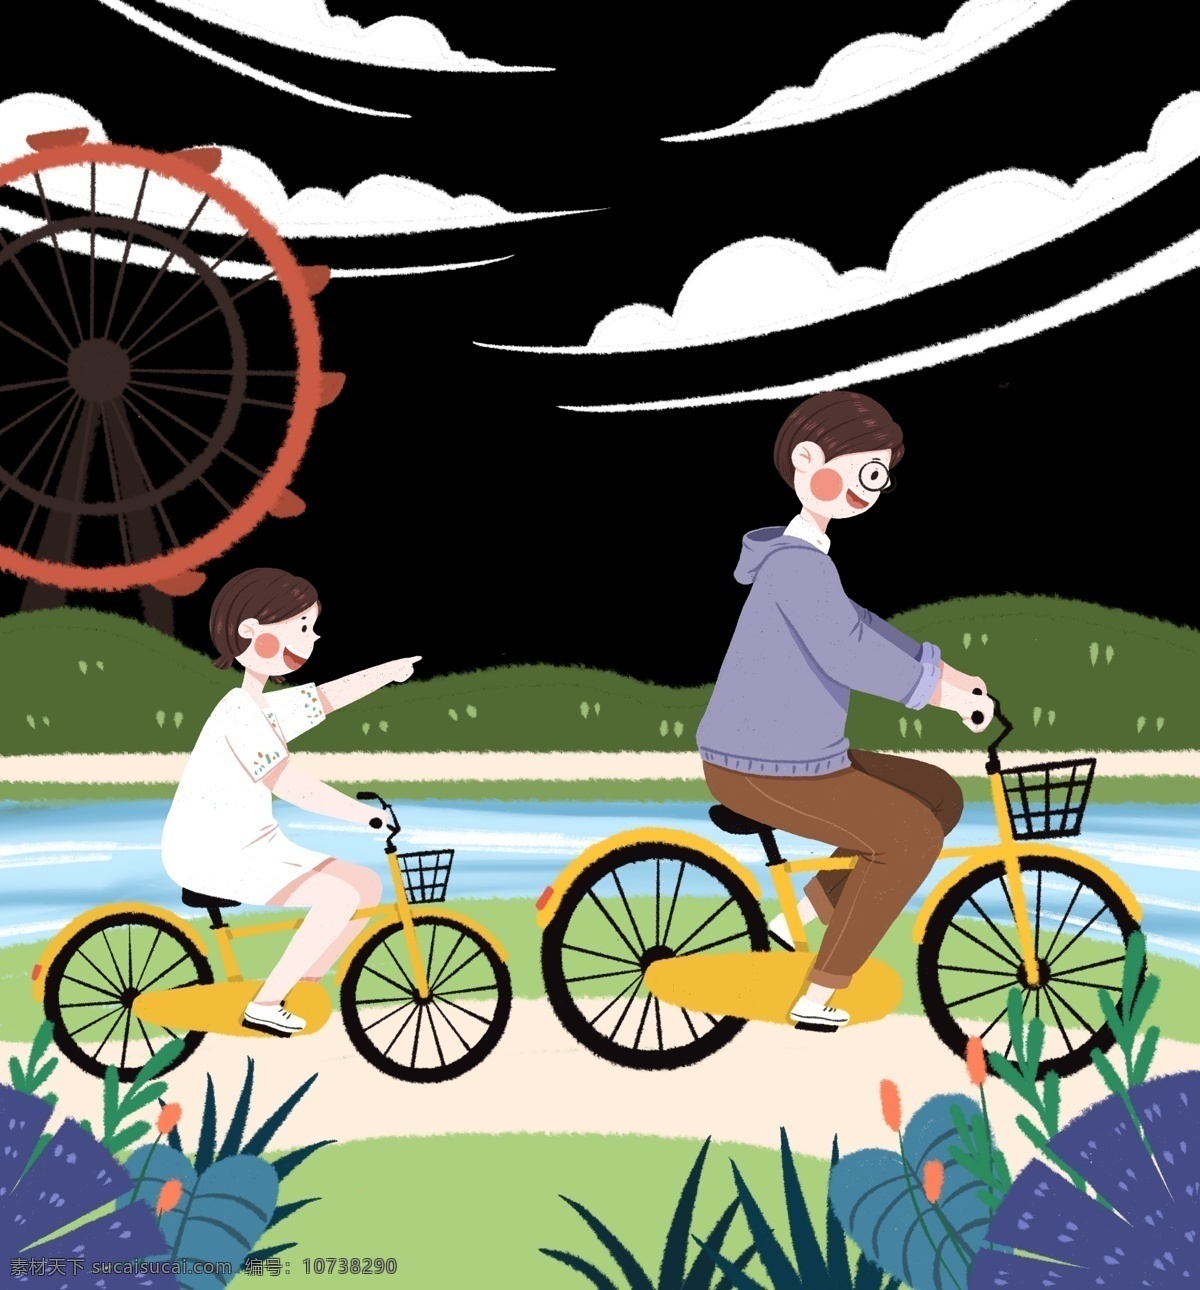 六一儿童节 骑 自行车 玩耍 父女 儿童节 六一 6.1 骑自行车 父亲节 父爱 植物 摩天轮 白云 云朵 小女孩 爸爸 父亲